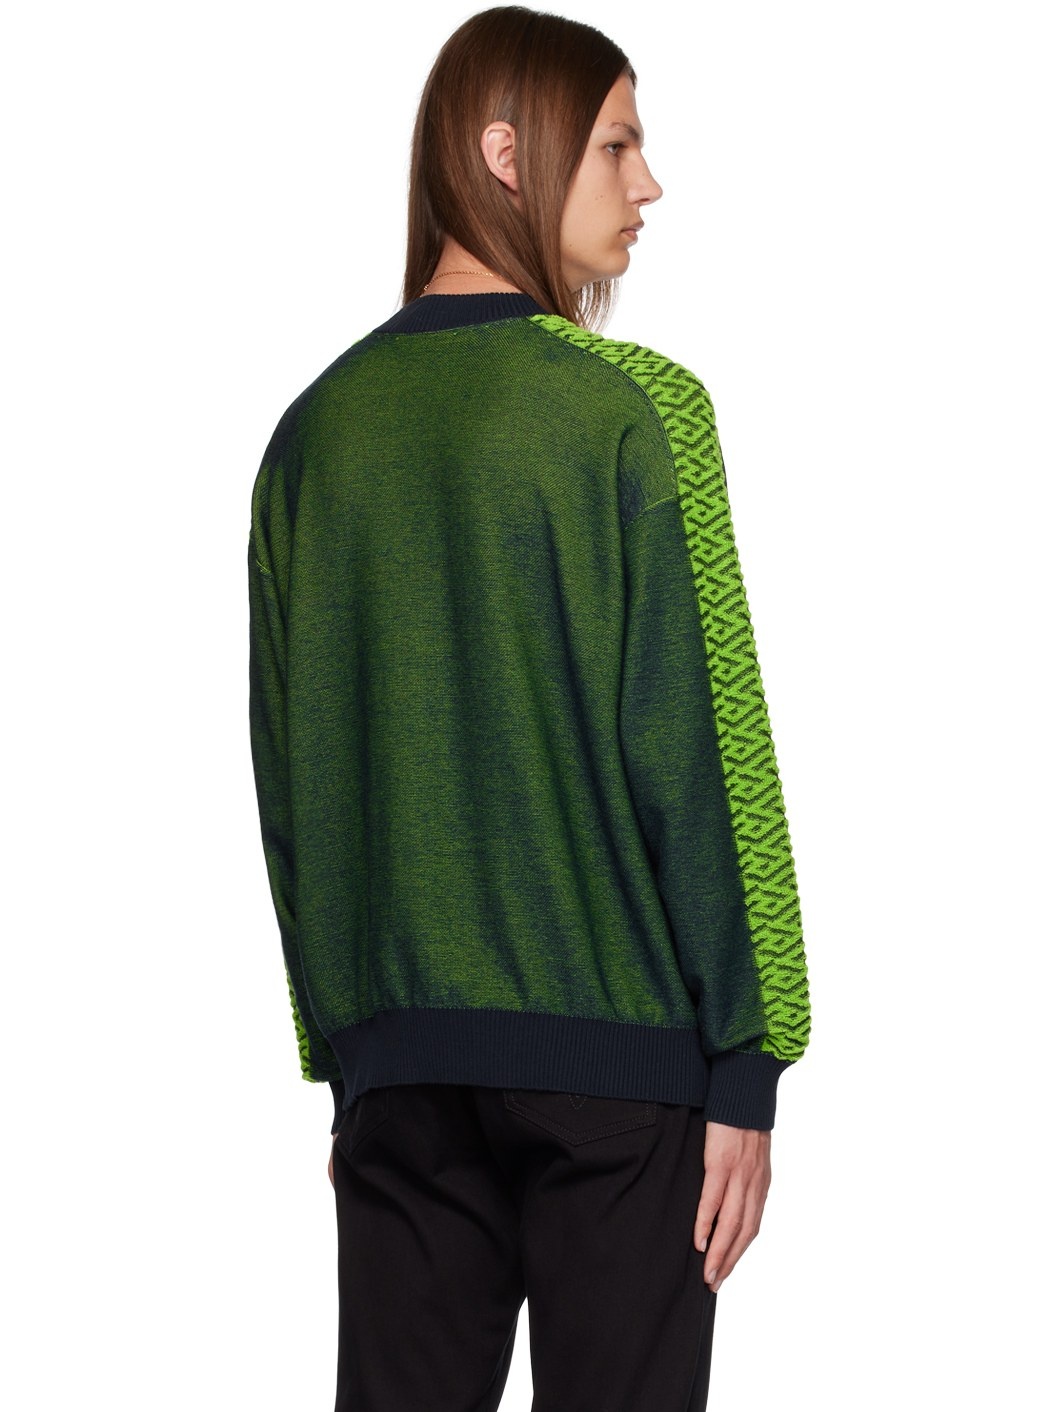 Green & Navy La Greca Medusa Sweater - 3